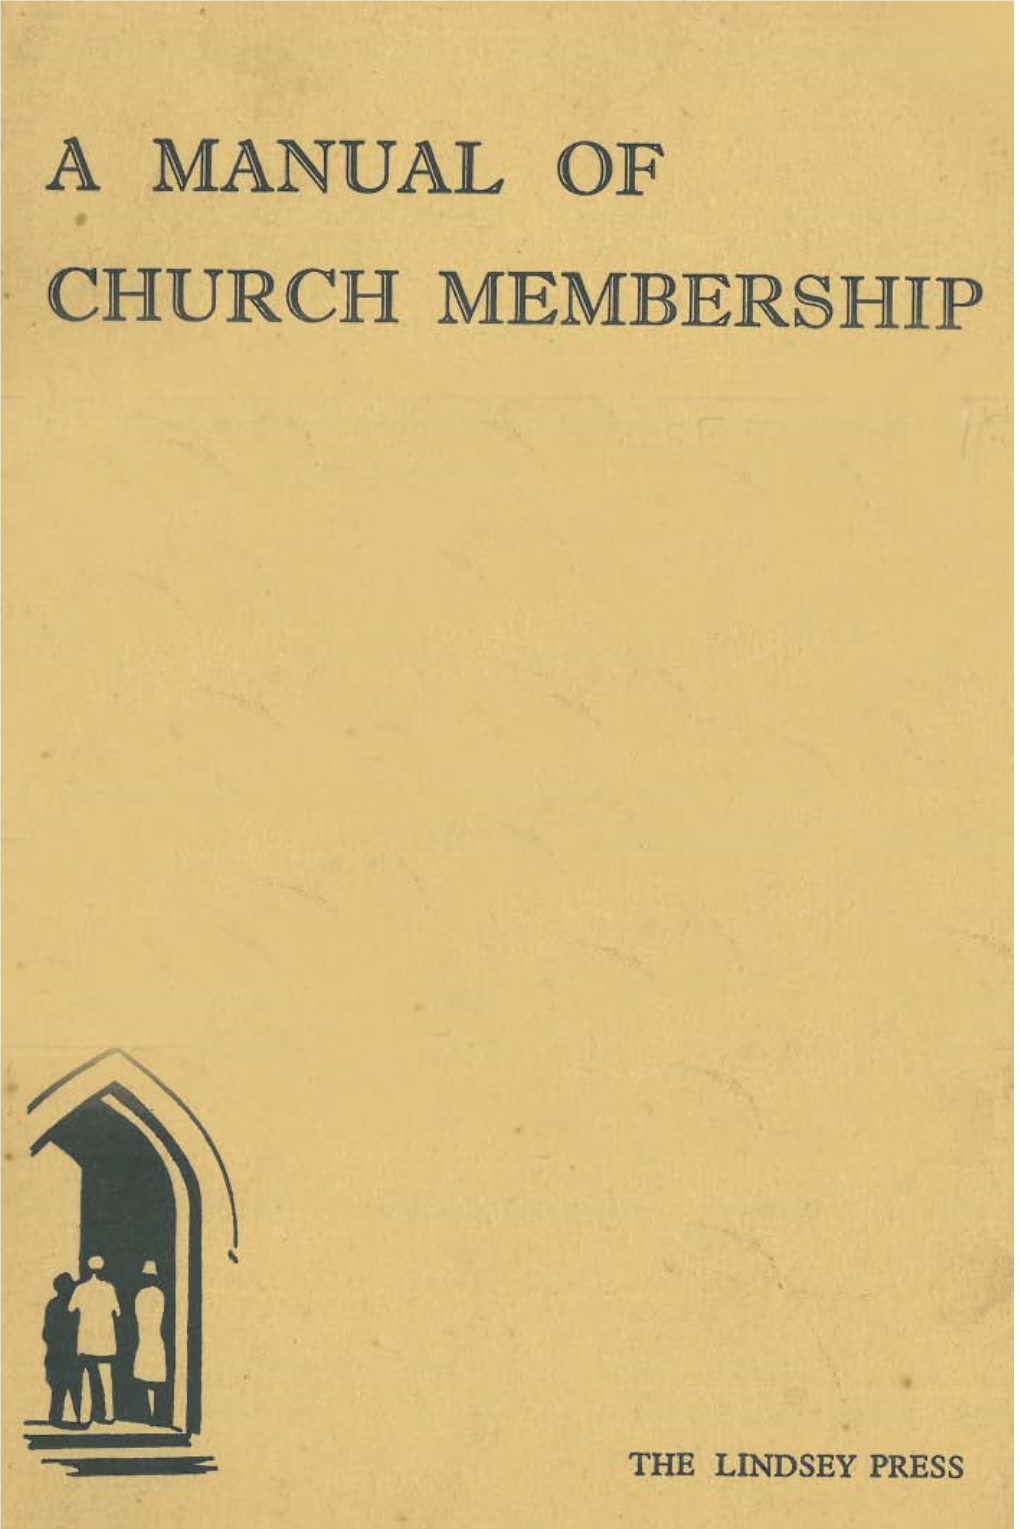 A Manual of Church Membership